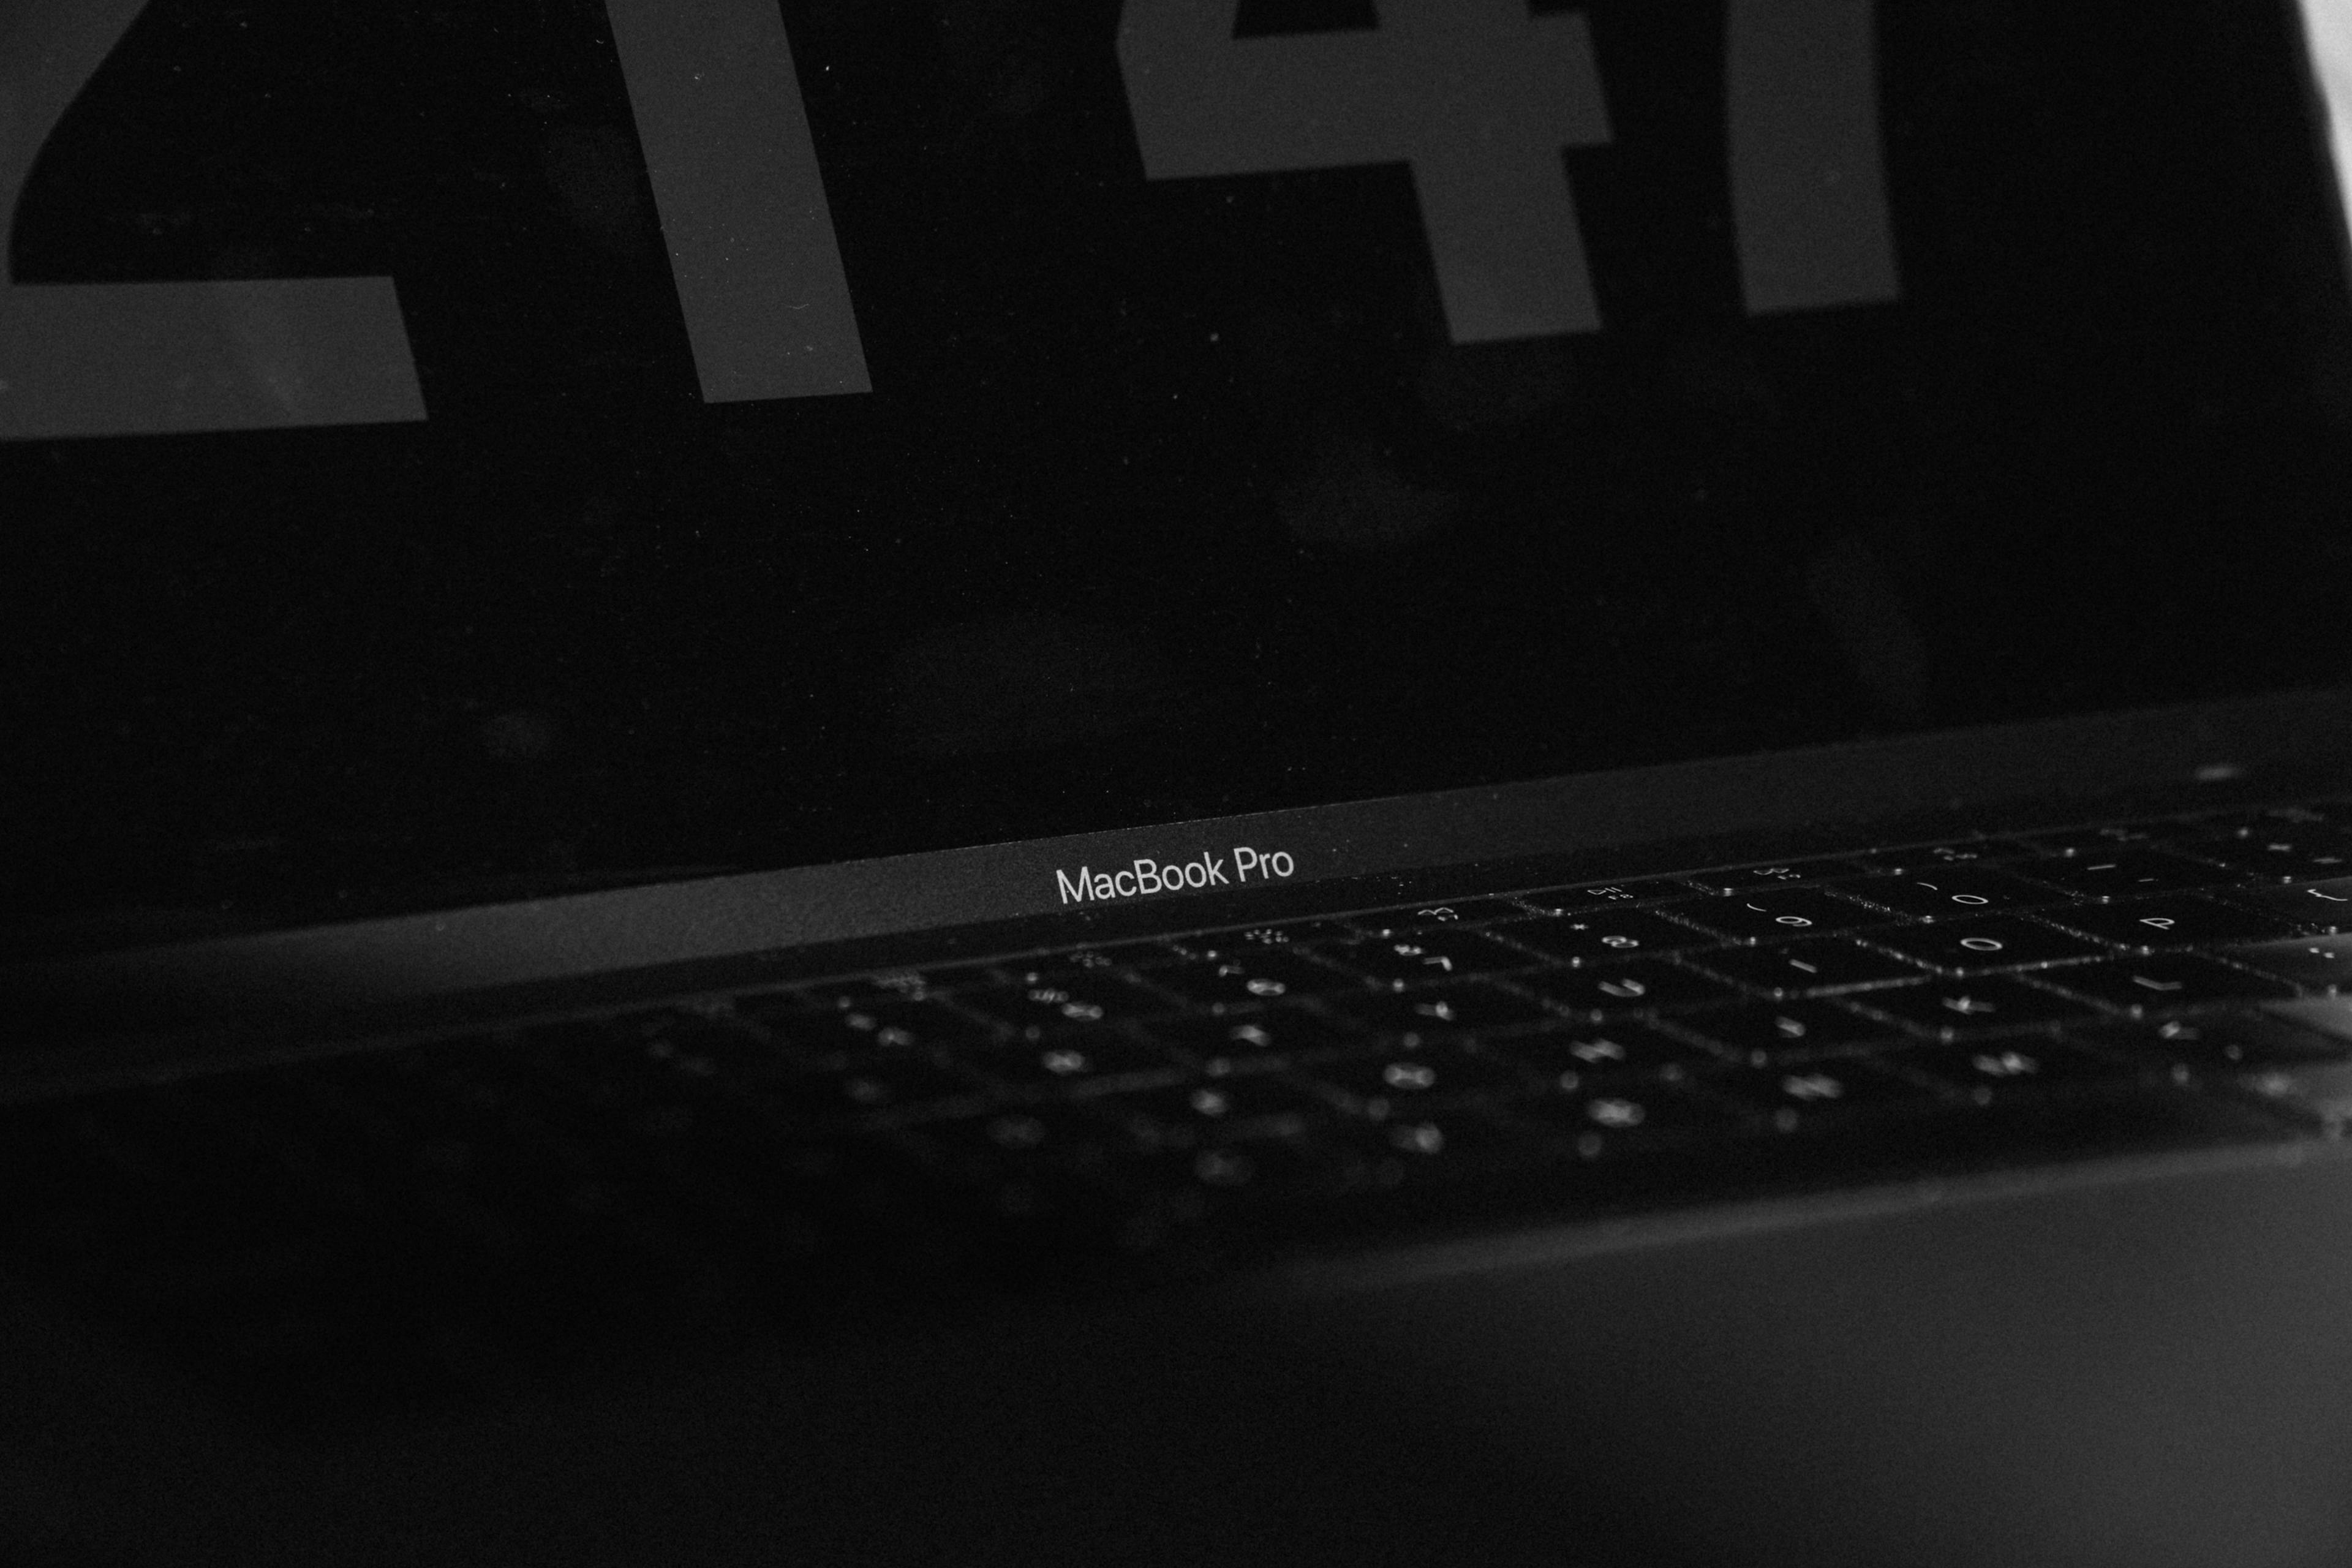 MacBook powered off, open.